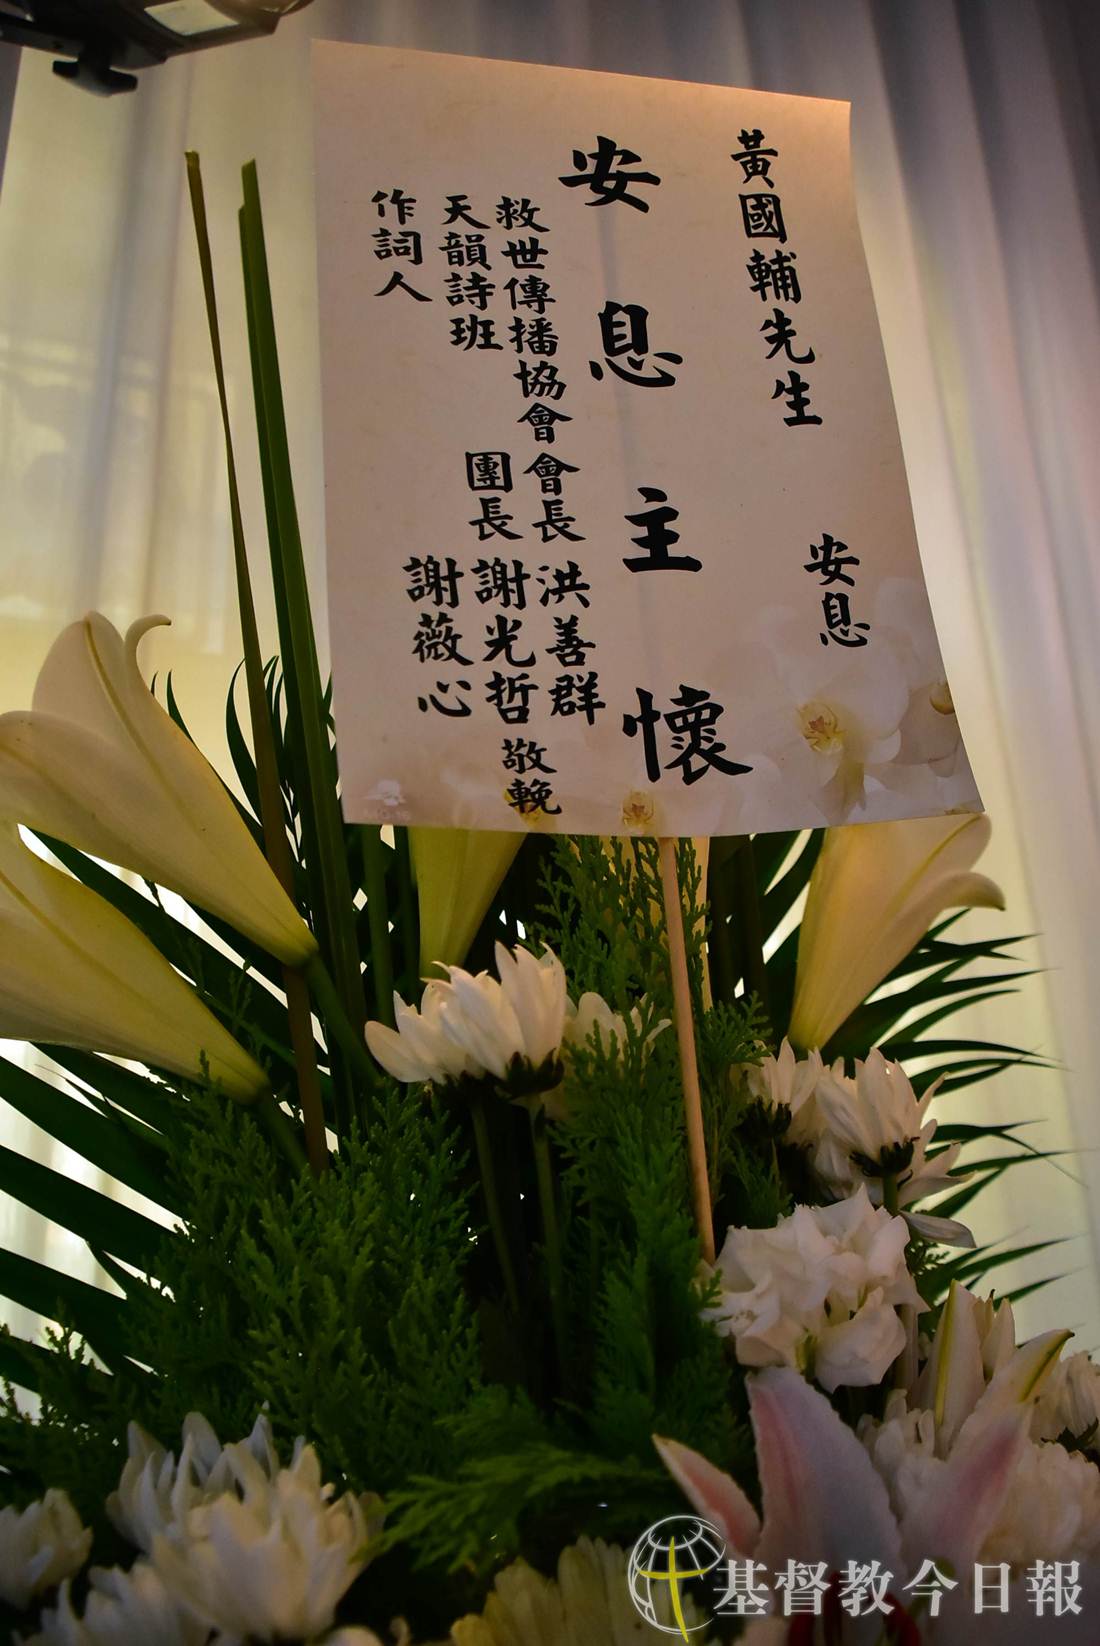 天韵诗班与救世传播协会特地献上鲜花，以表慰问。